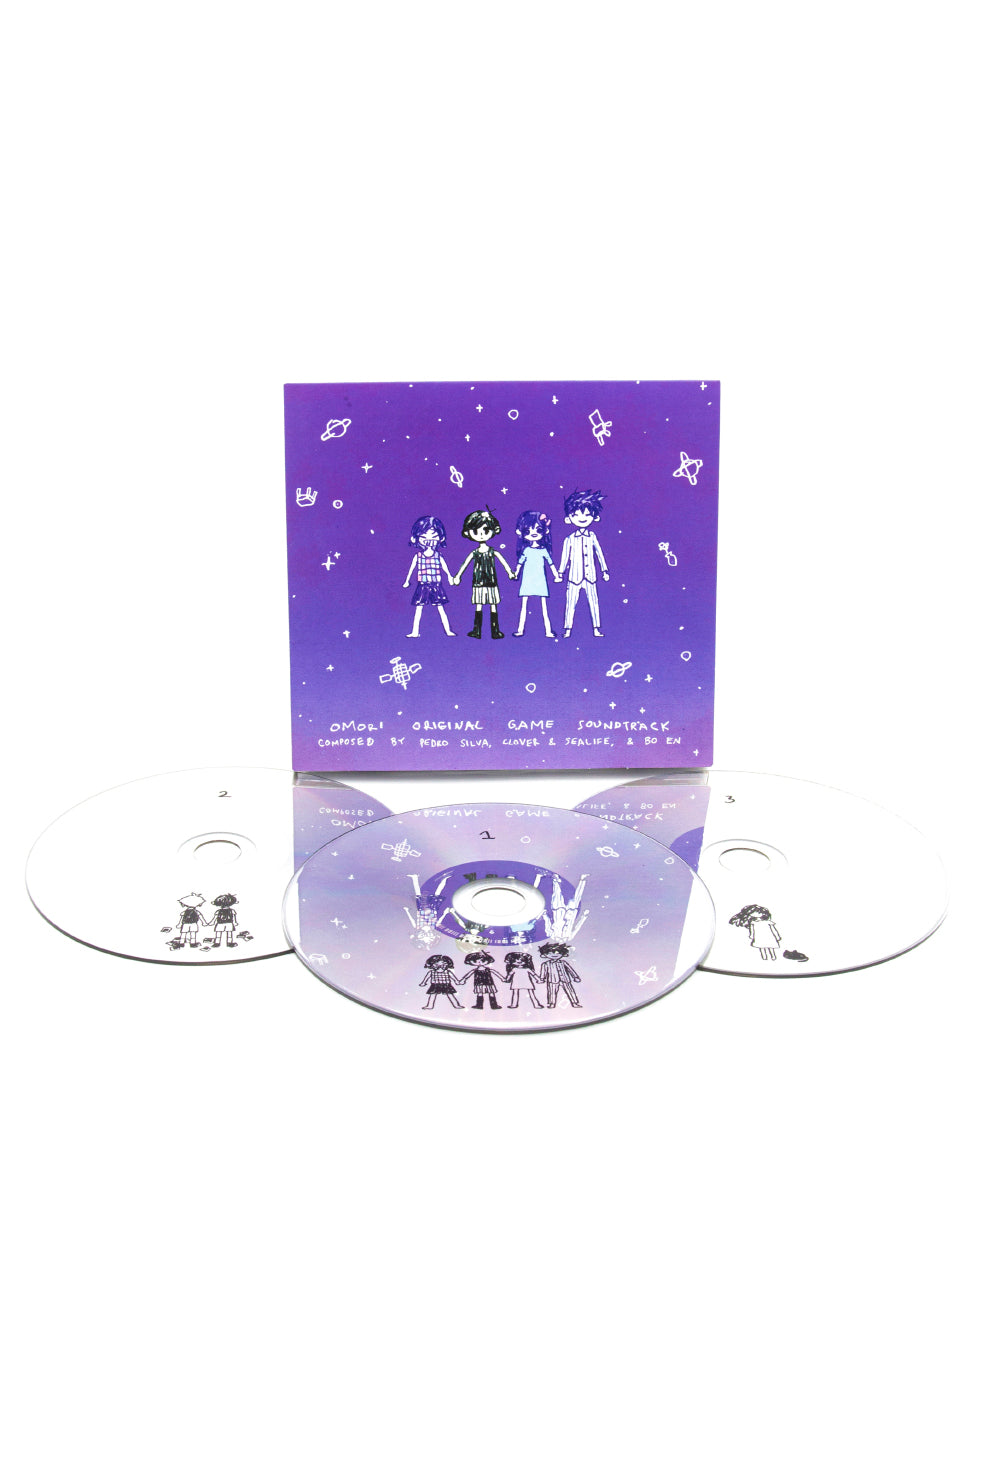 OMORI Original Soundtrack CD (3-disc set) – OMOCAT